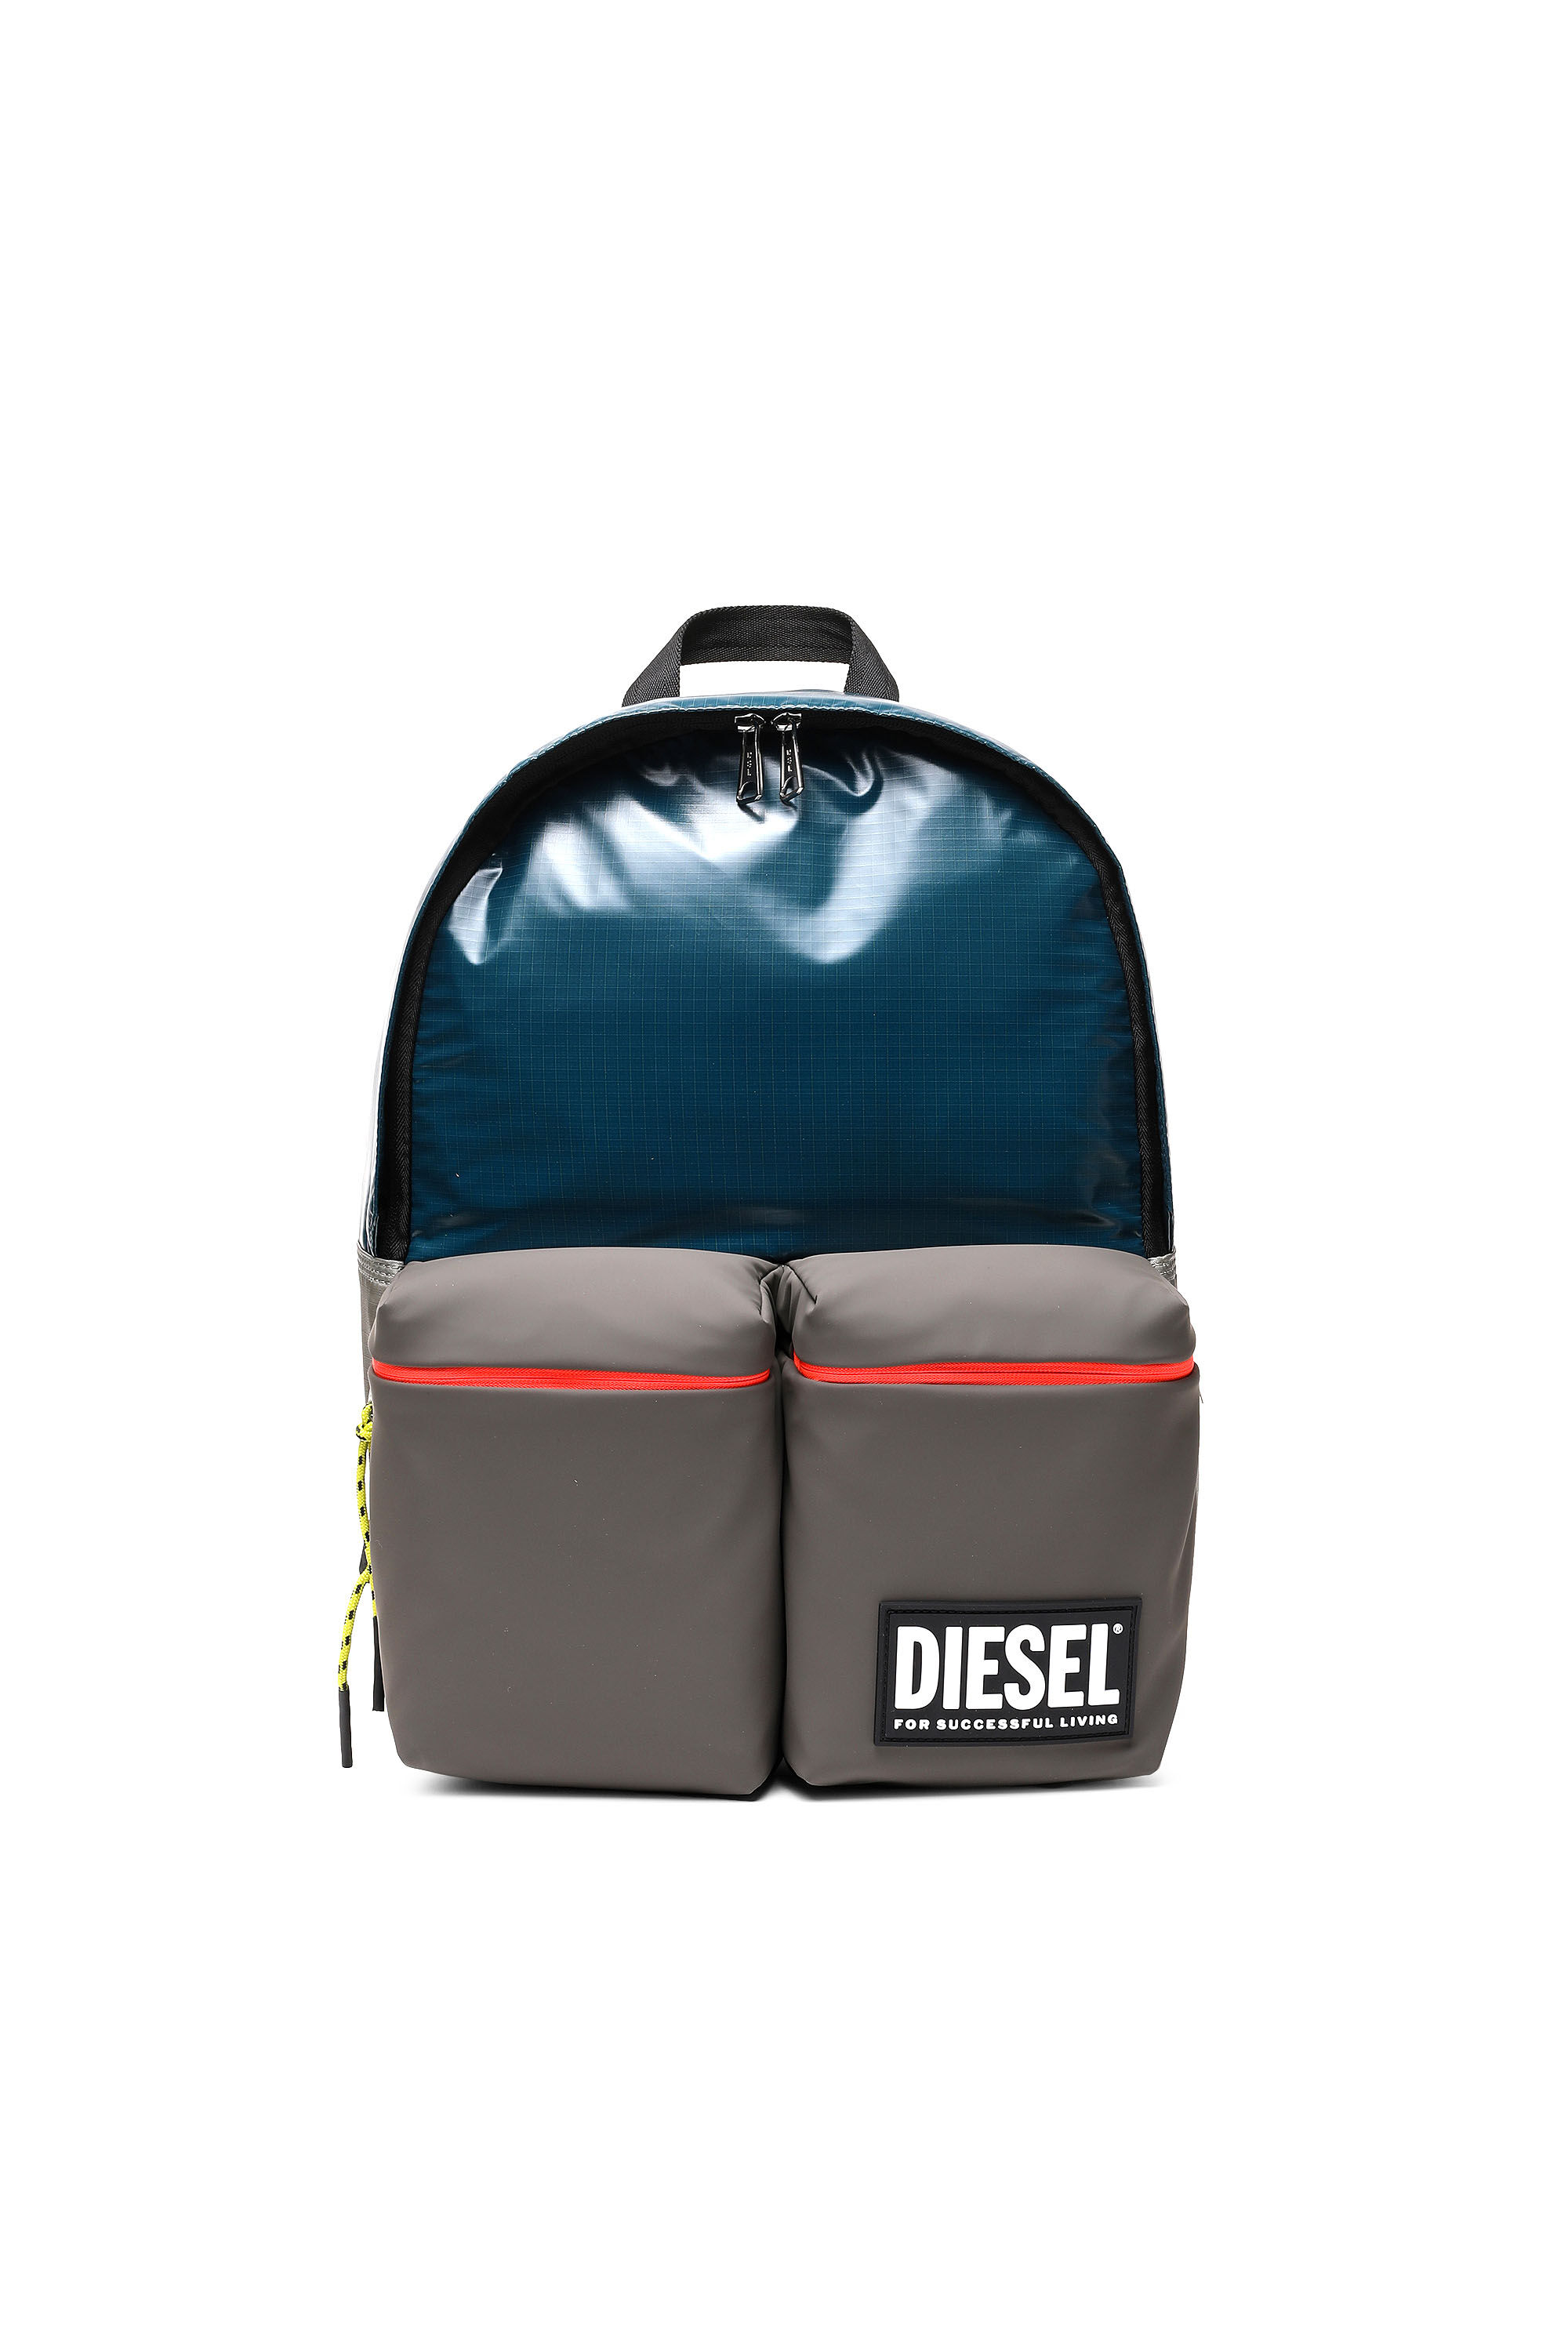 Diesel - BACKYO, Polychrome/Bleu - Image 1